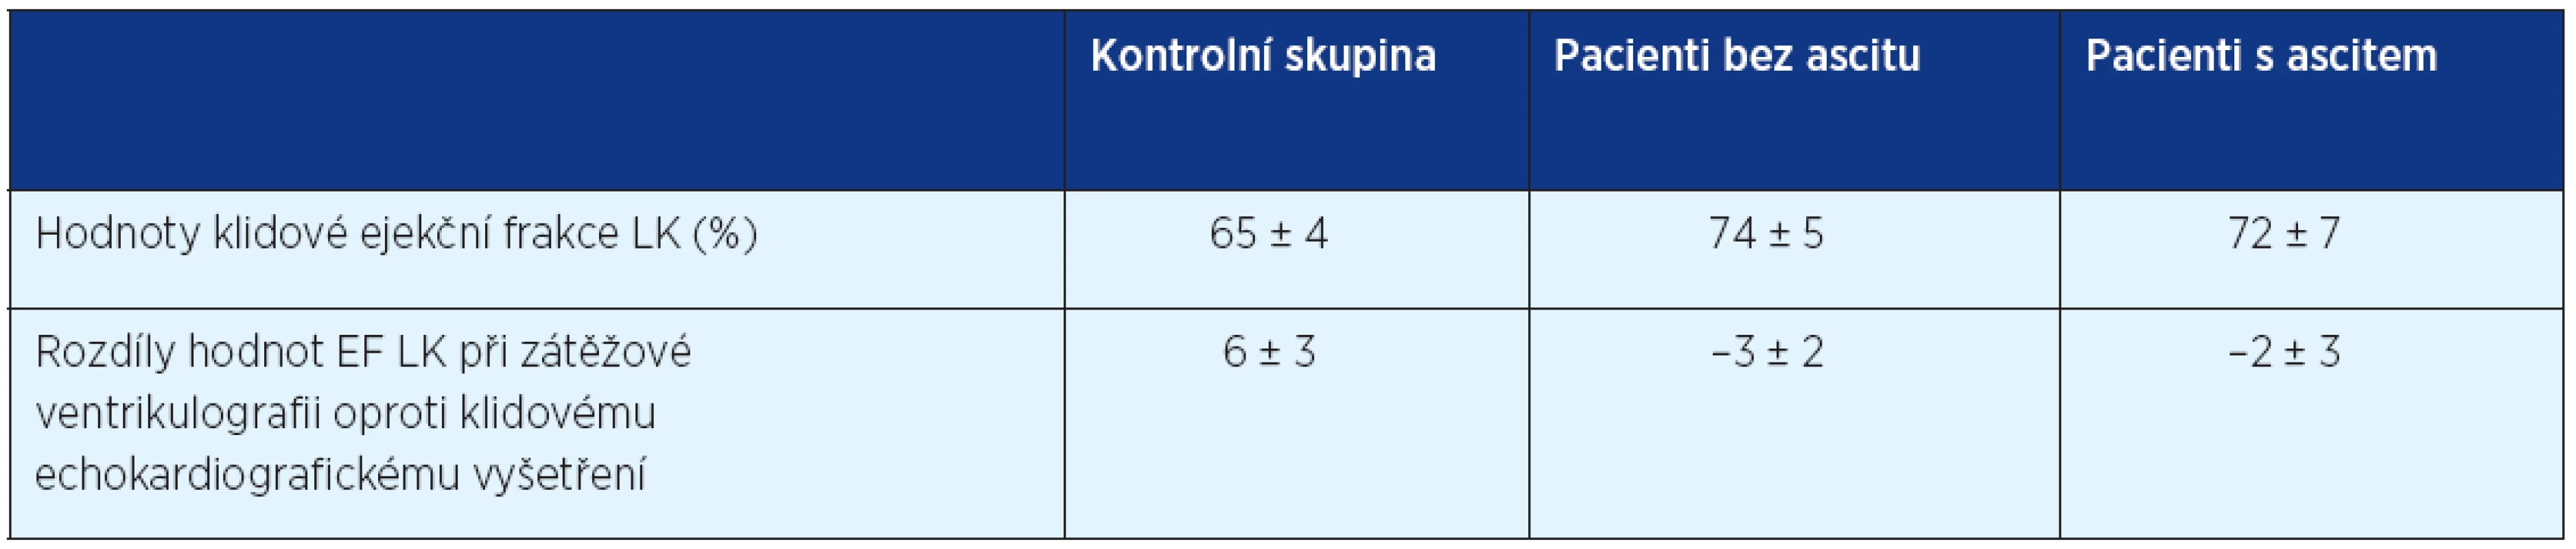 Srovnání hodnot ejekční frakce LK (%) u pacientů za klidových podmínek a rozdíl změny oproti hodnotám EF LK při zátěžové ventrikulografii (volně podle 19)